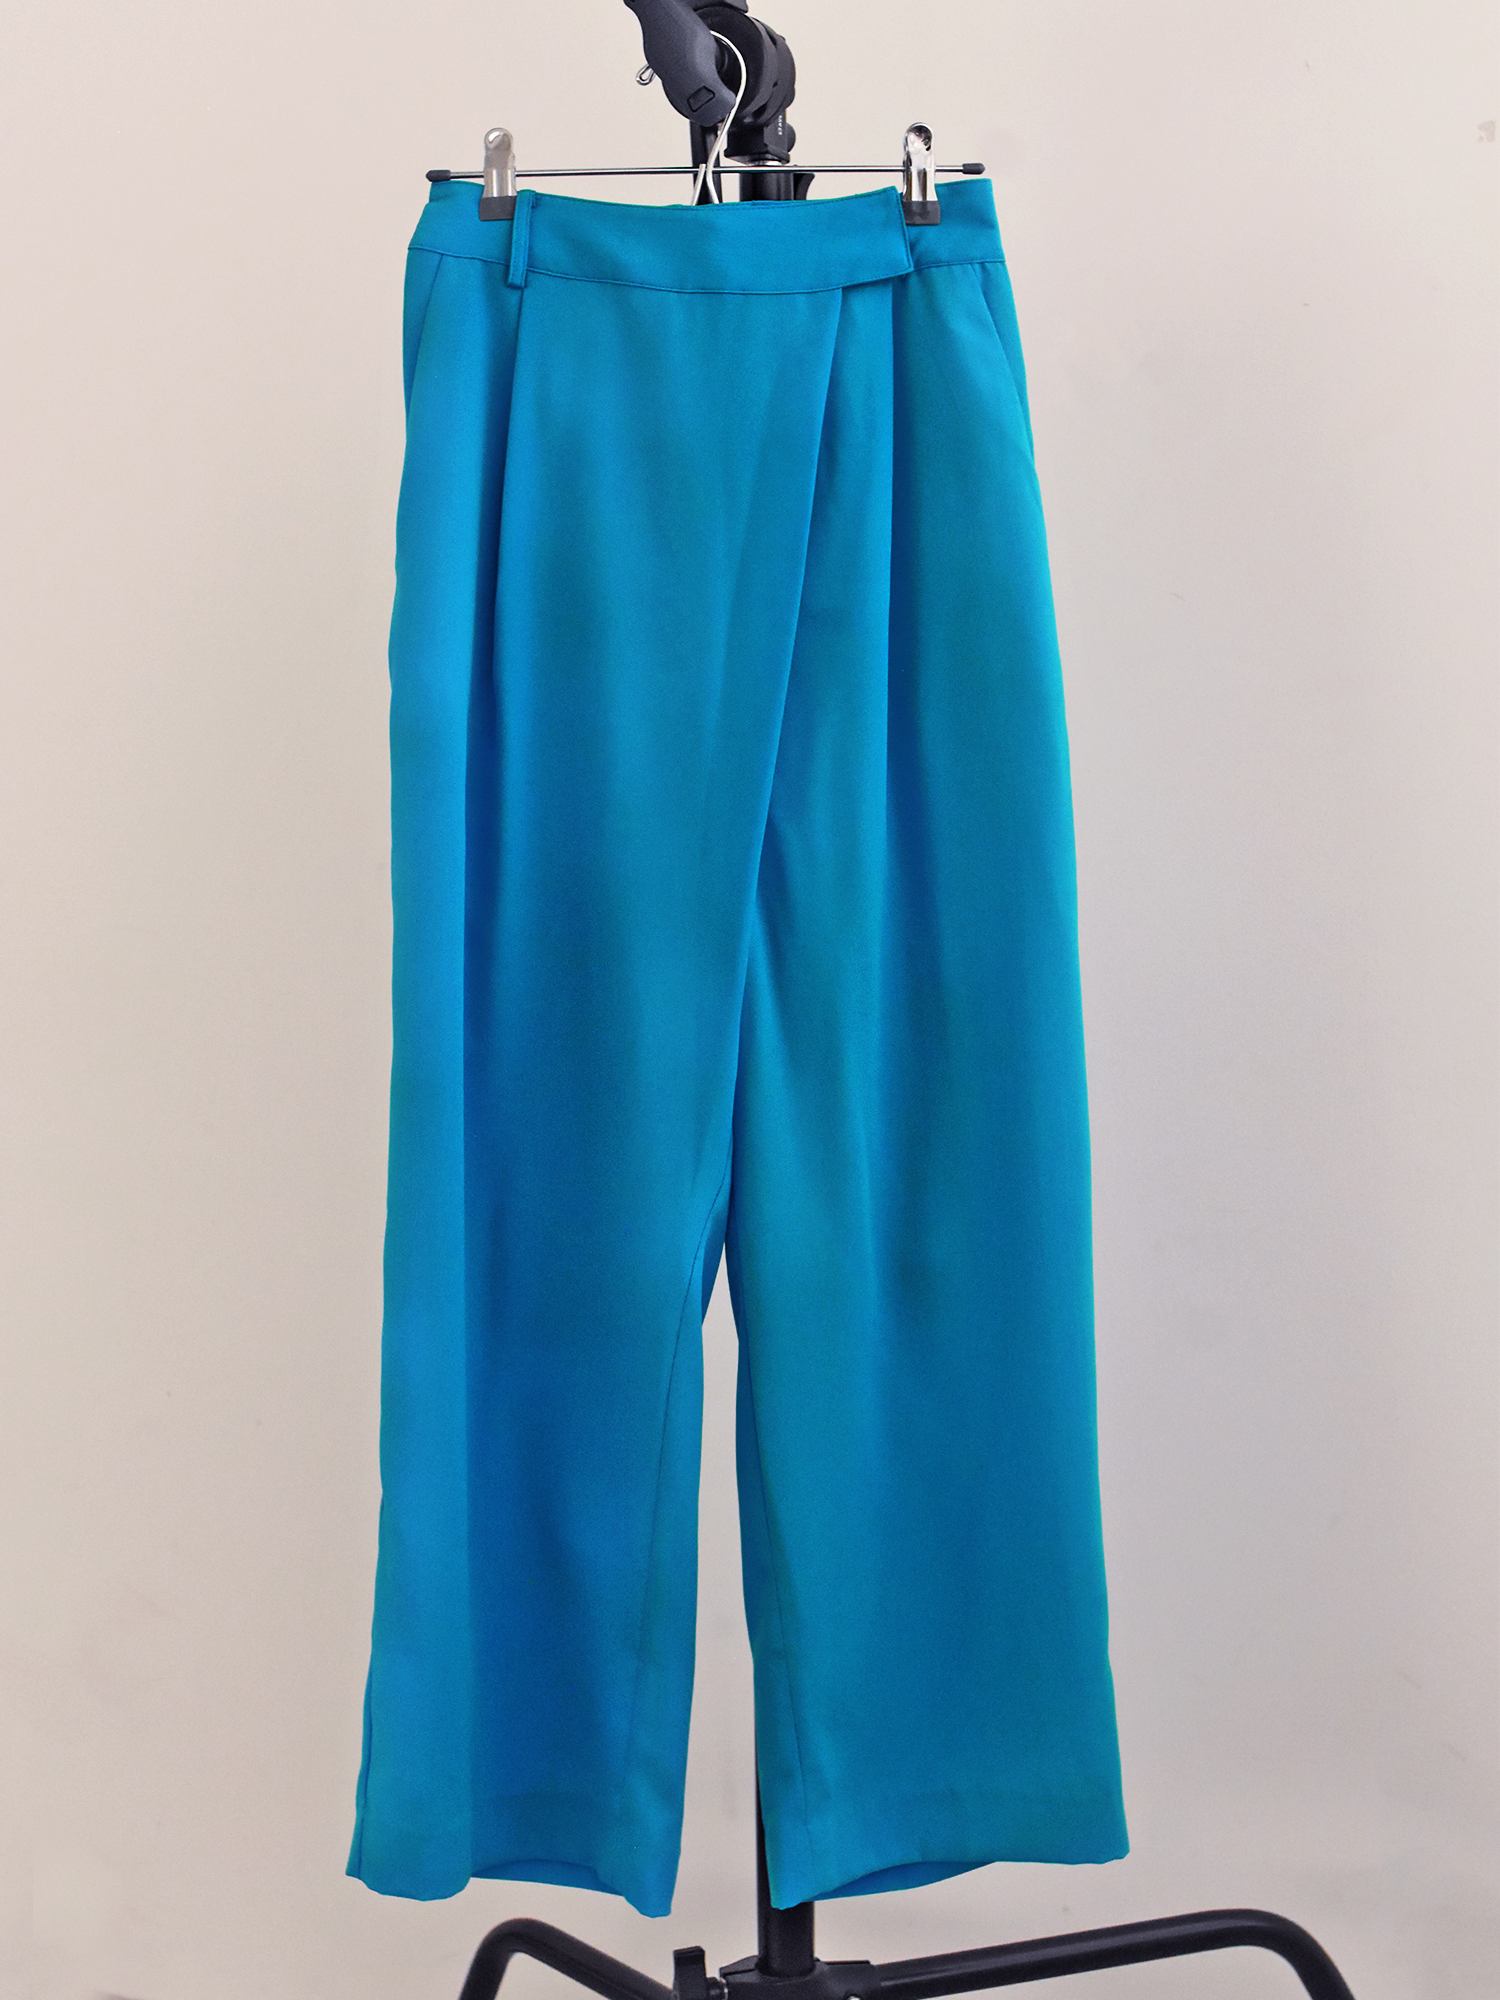 georgette color long slacks（turquoise）